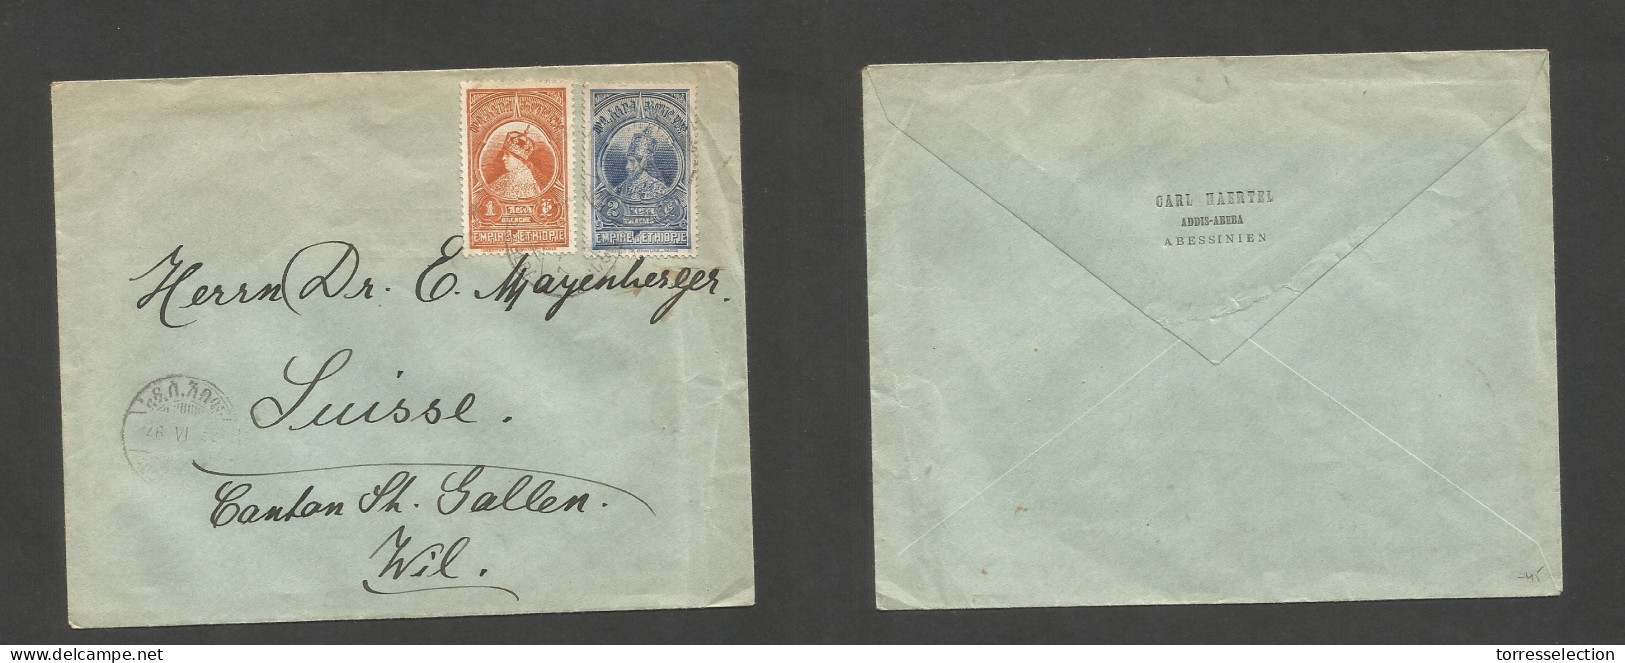 ETHIOPIA. 1932 (26 June) Addis Abeba - Switzerland, Will, St. Gullen. Multifkd Env At 3 Querches Rate, Tied Cds. Reverse - Äthiopien